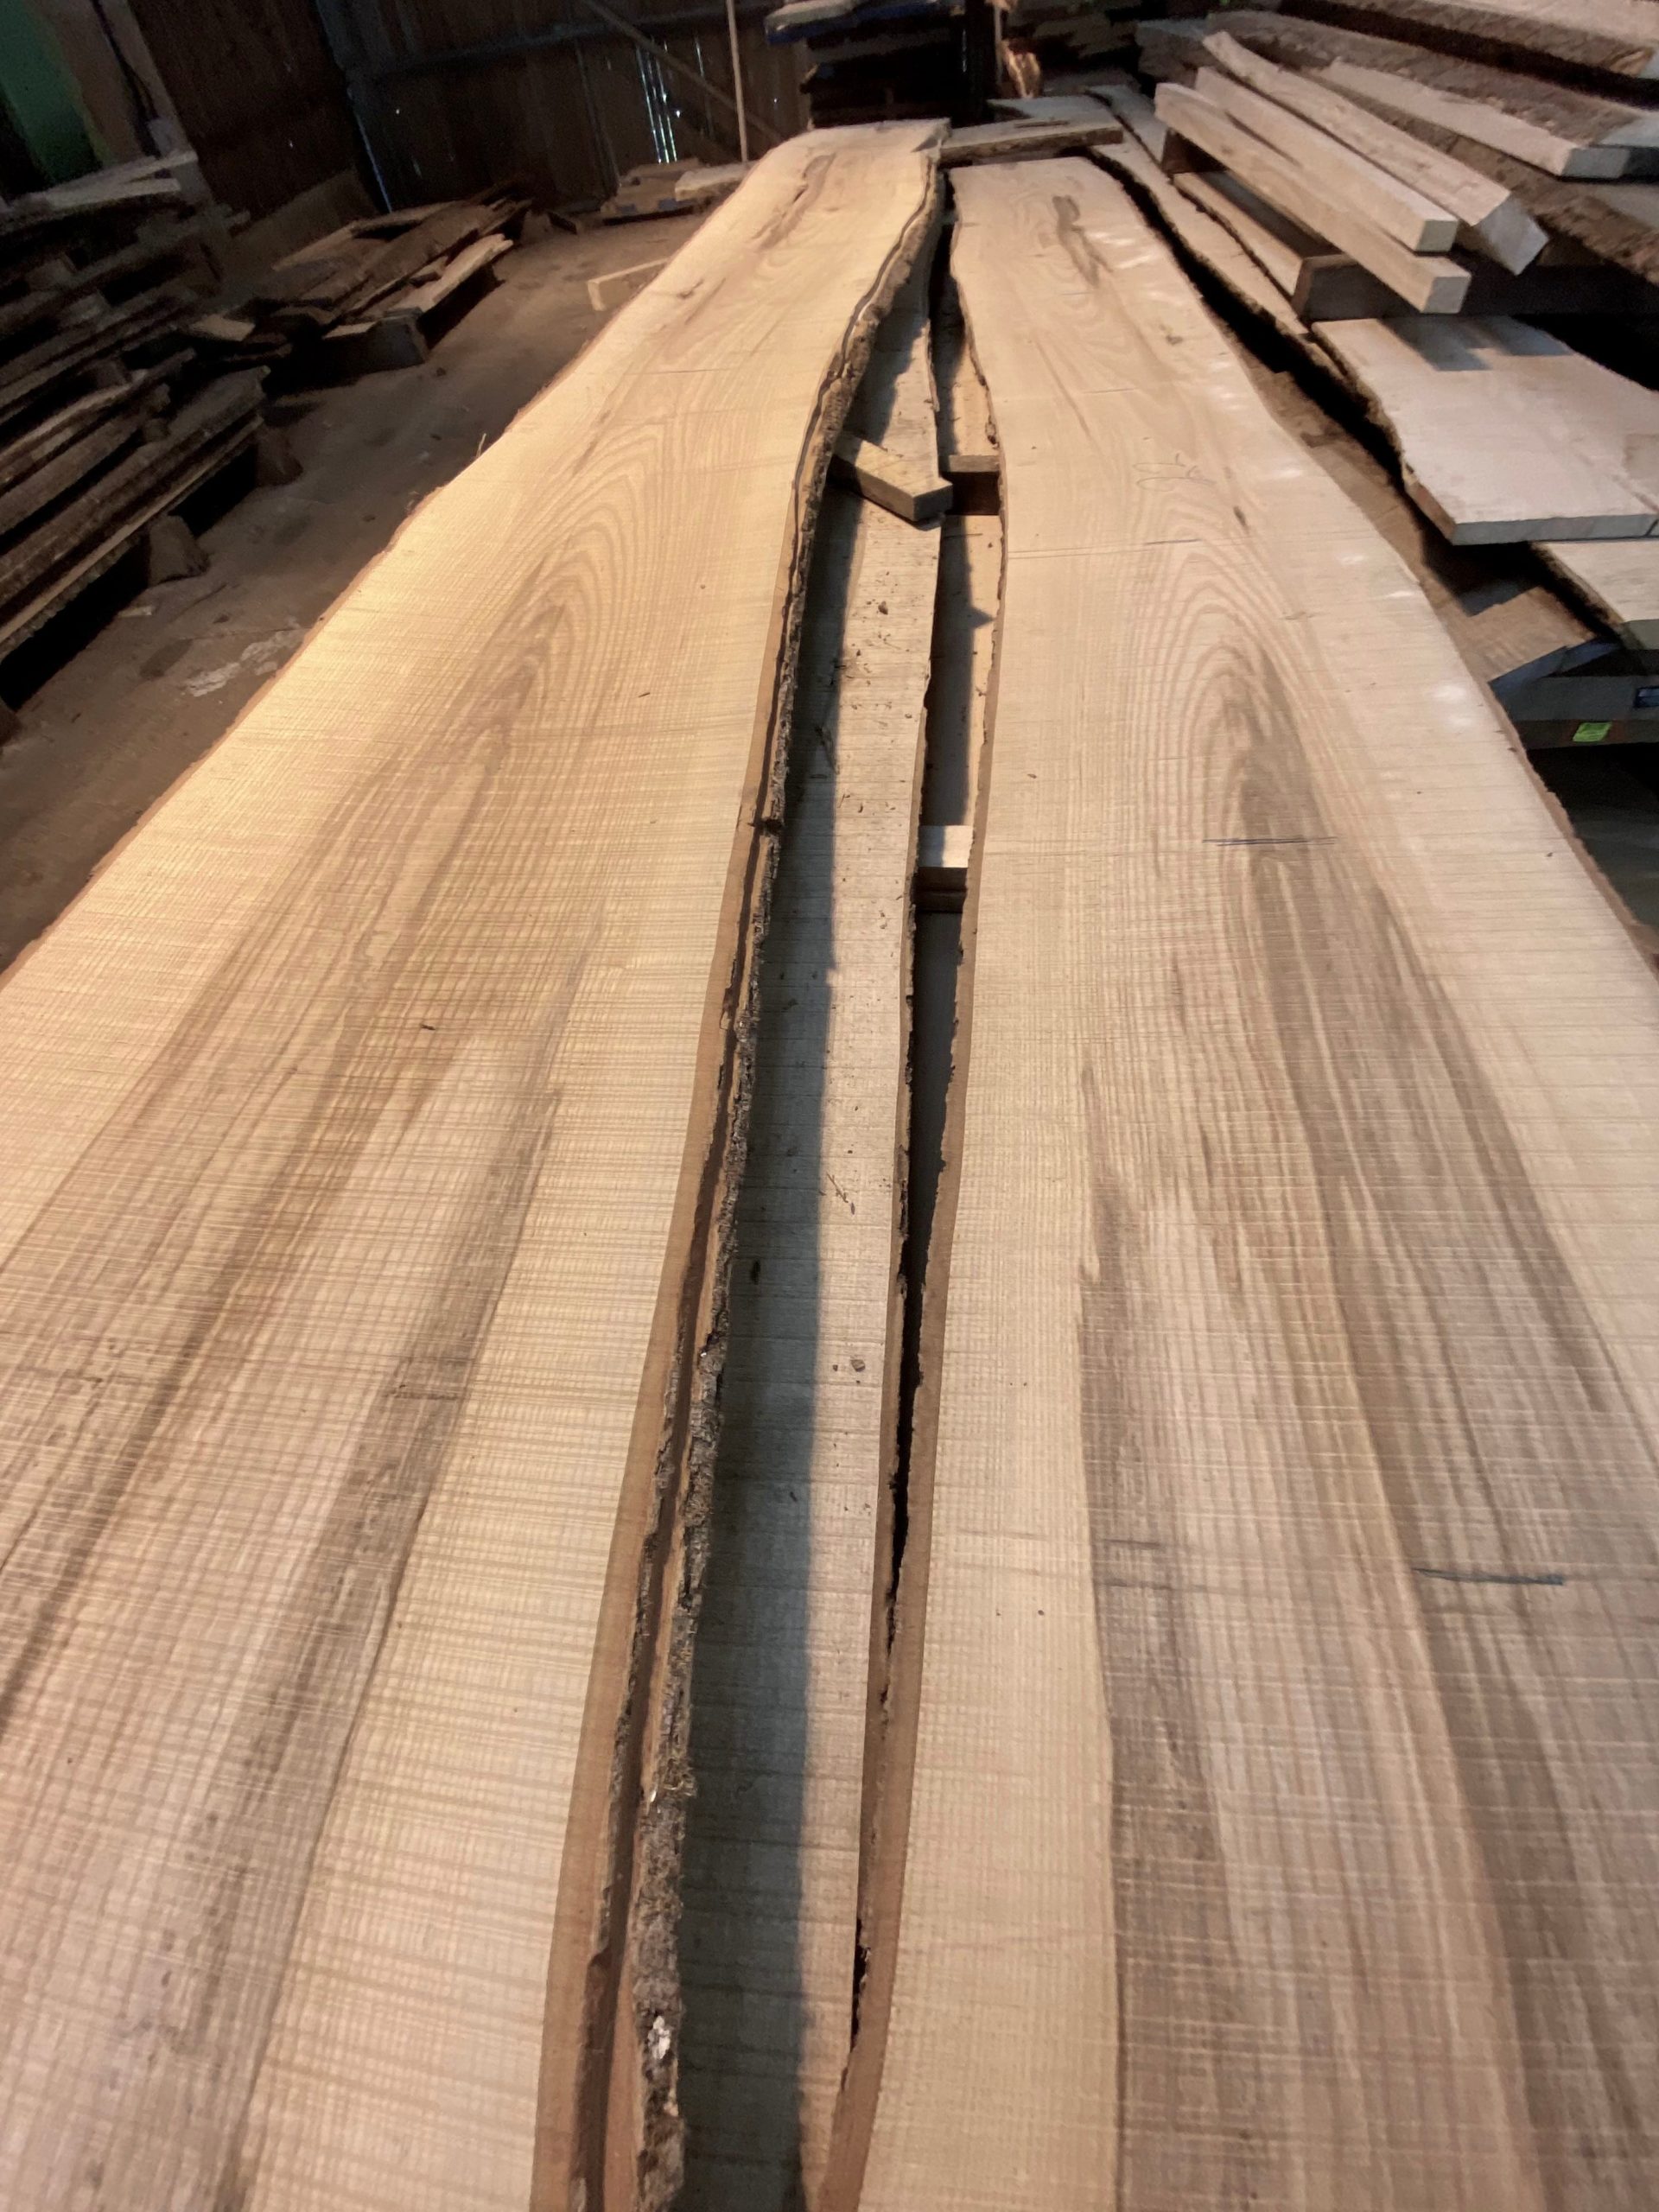 Ash wood lengths